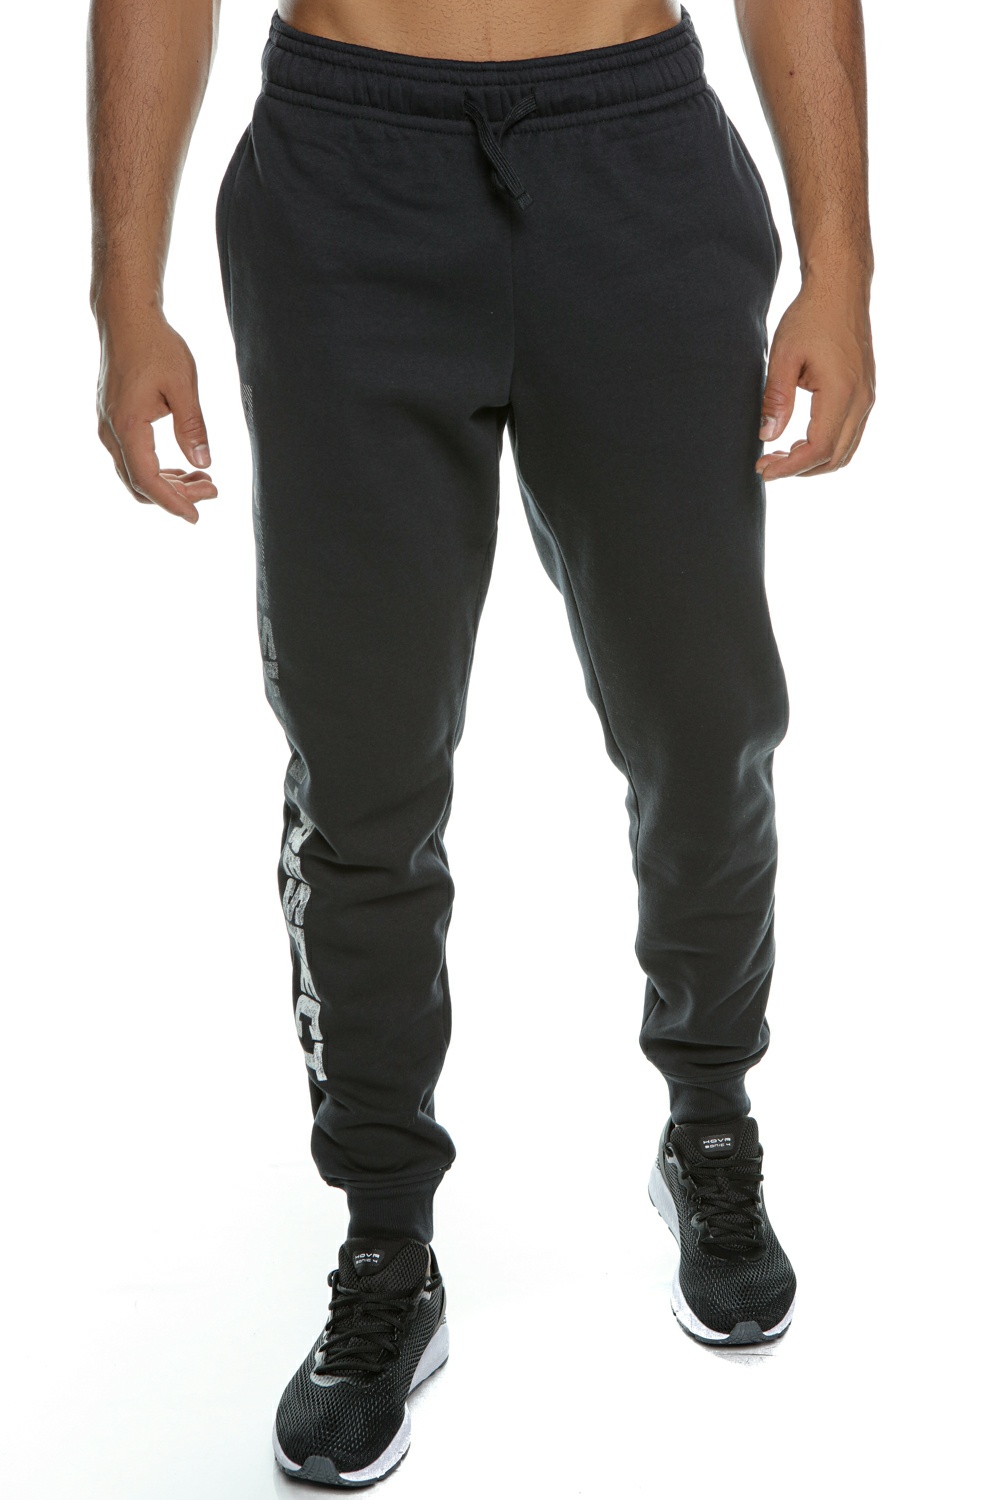 Ανδρικά/Ρούχα/Αθλητικά/Φόρμες UNDER ARMOUR - Ανδρικό παντελόνι φόρμας UNDER ARMOUR Pjt Rock Rival Flc Jogger μαύρο